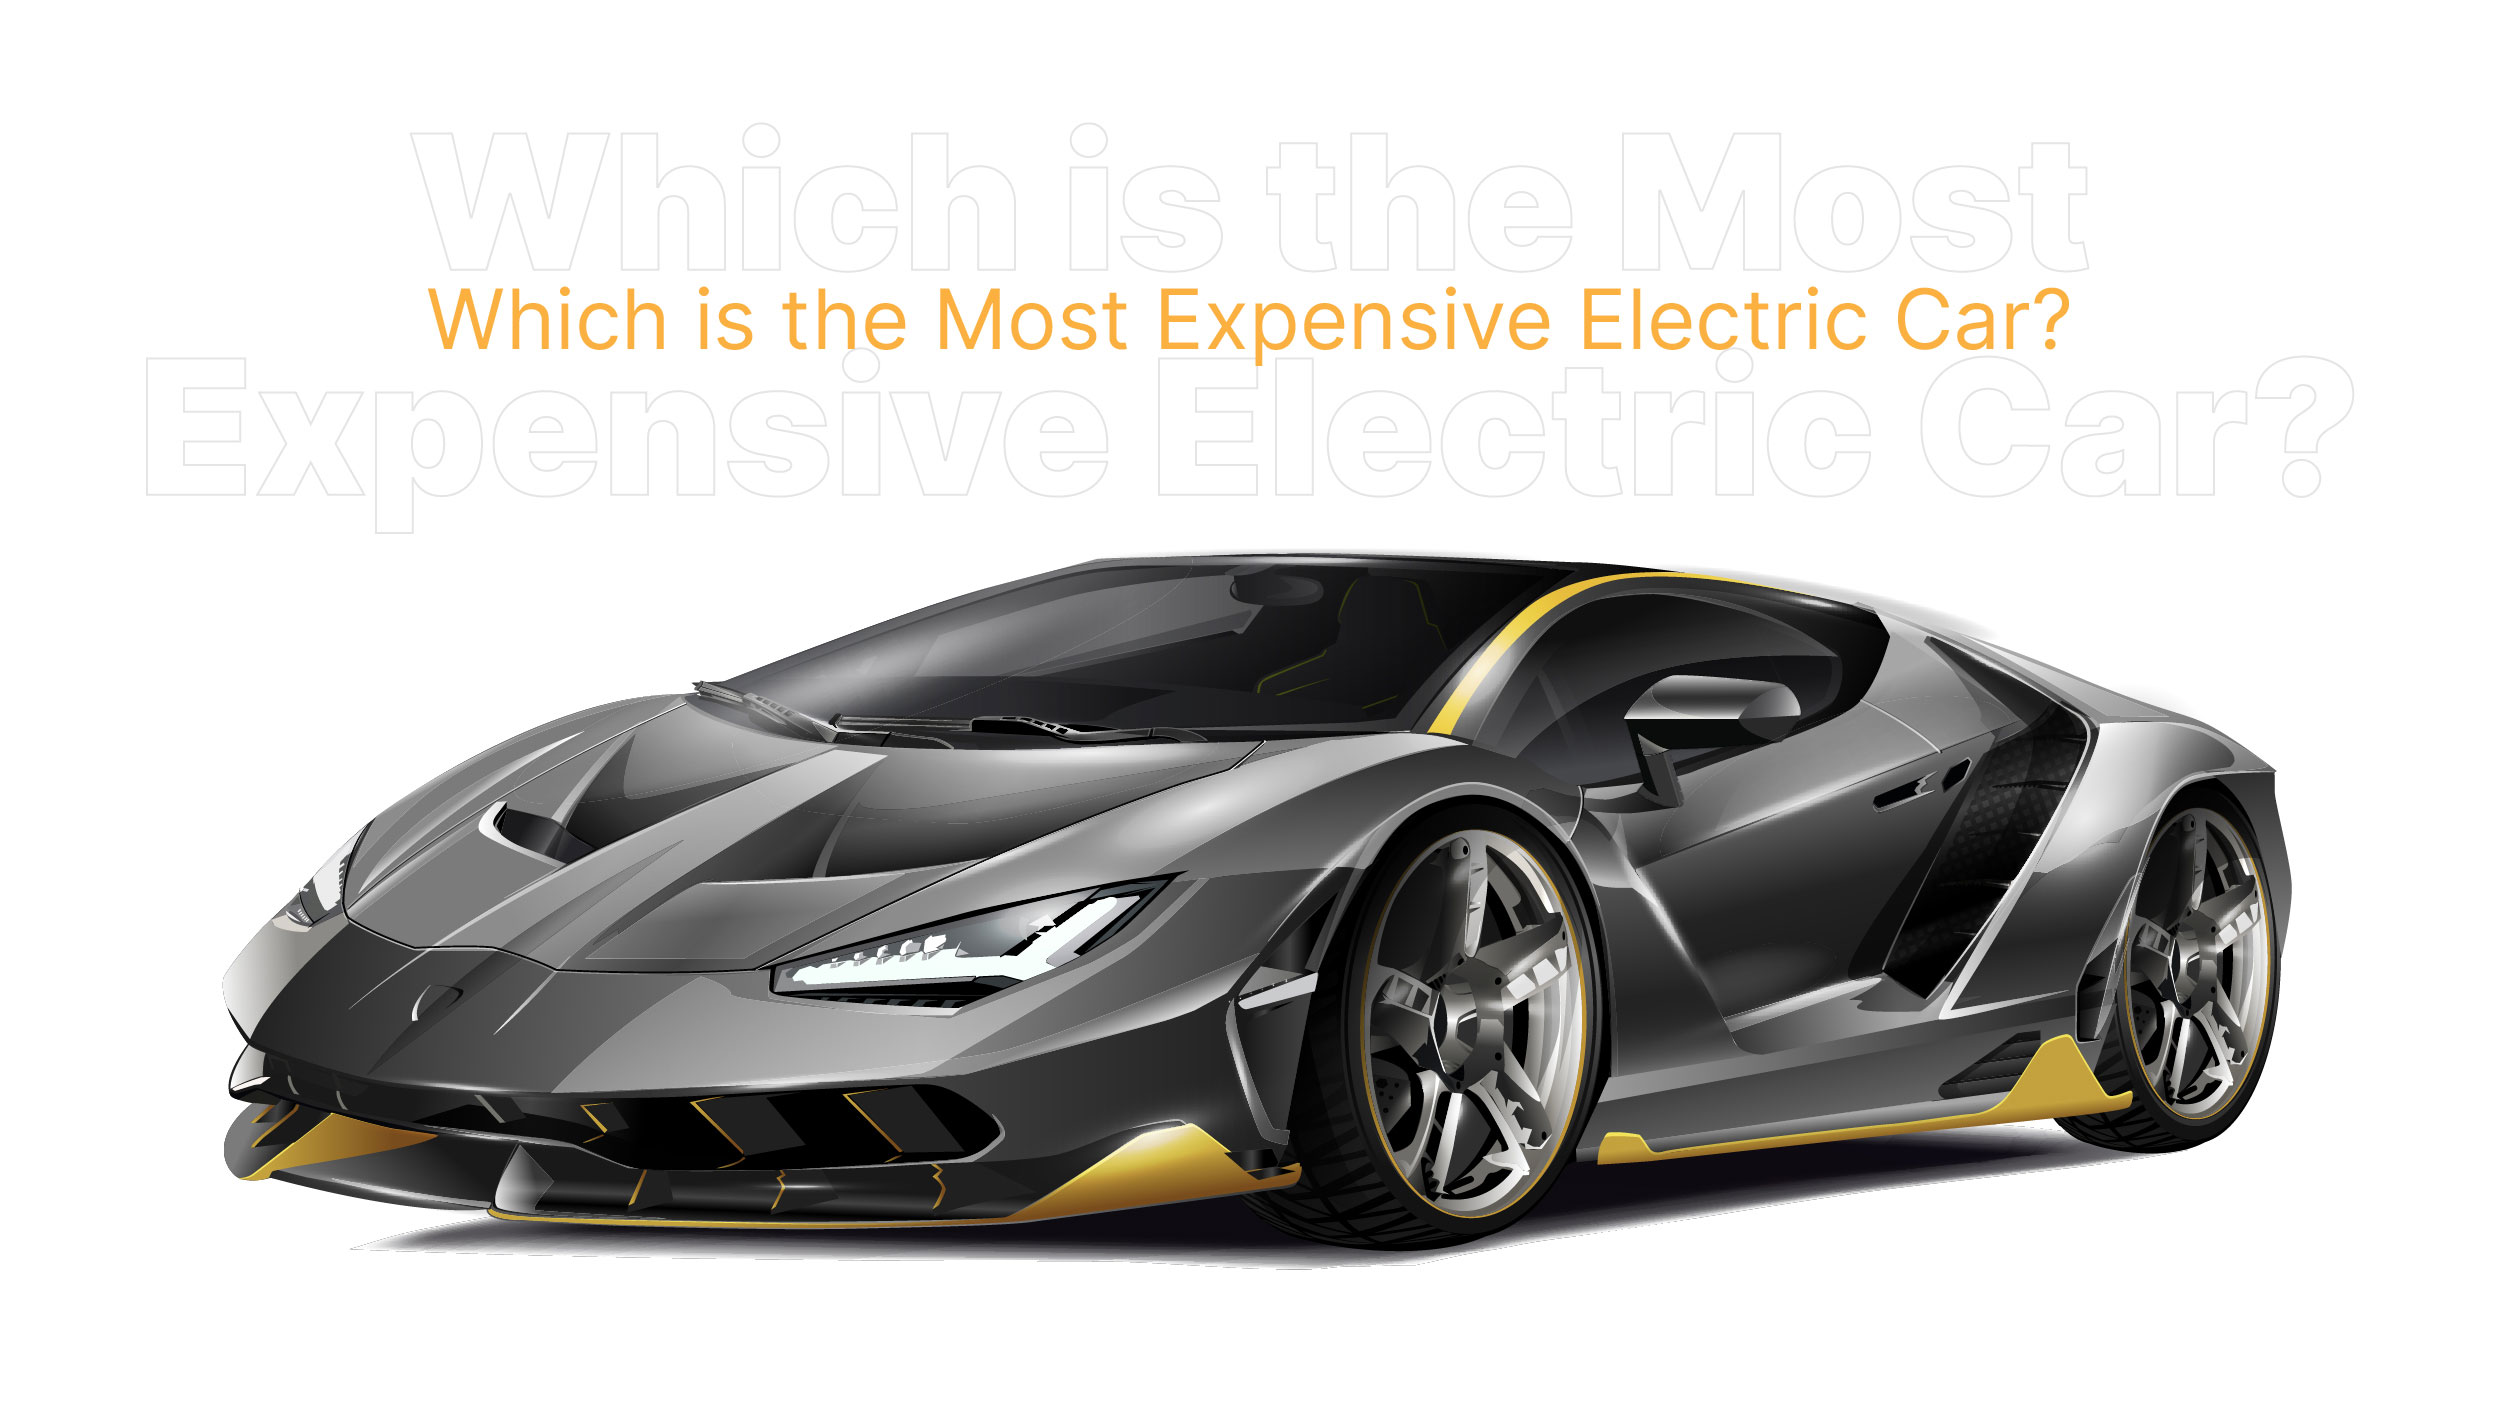 Luxury Electric Vehicles